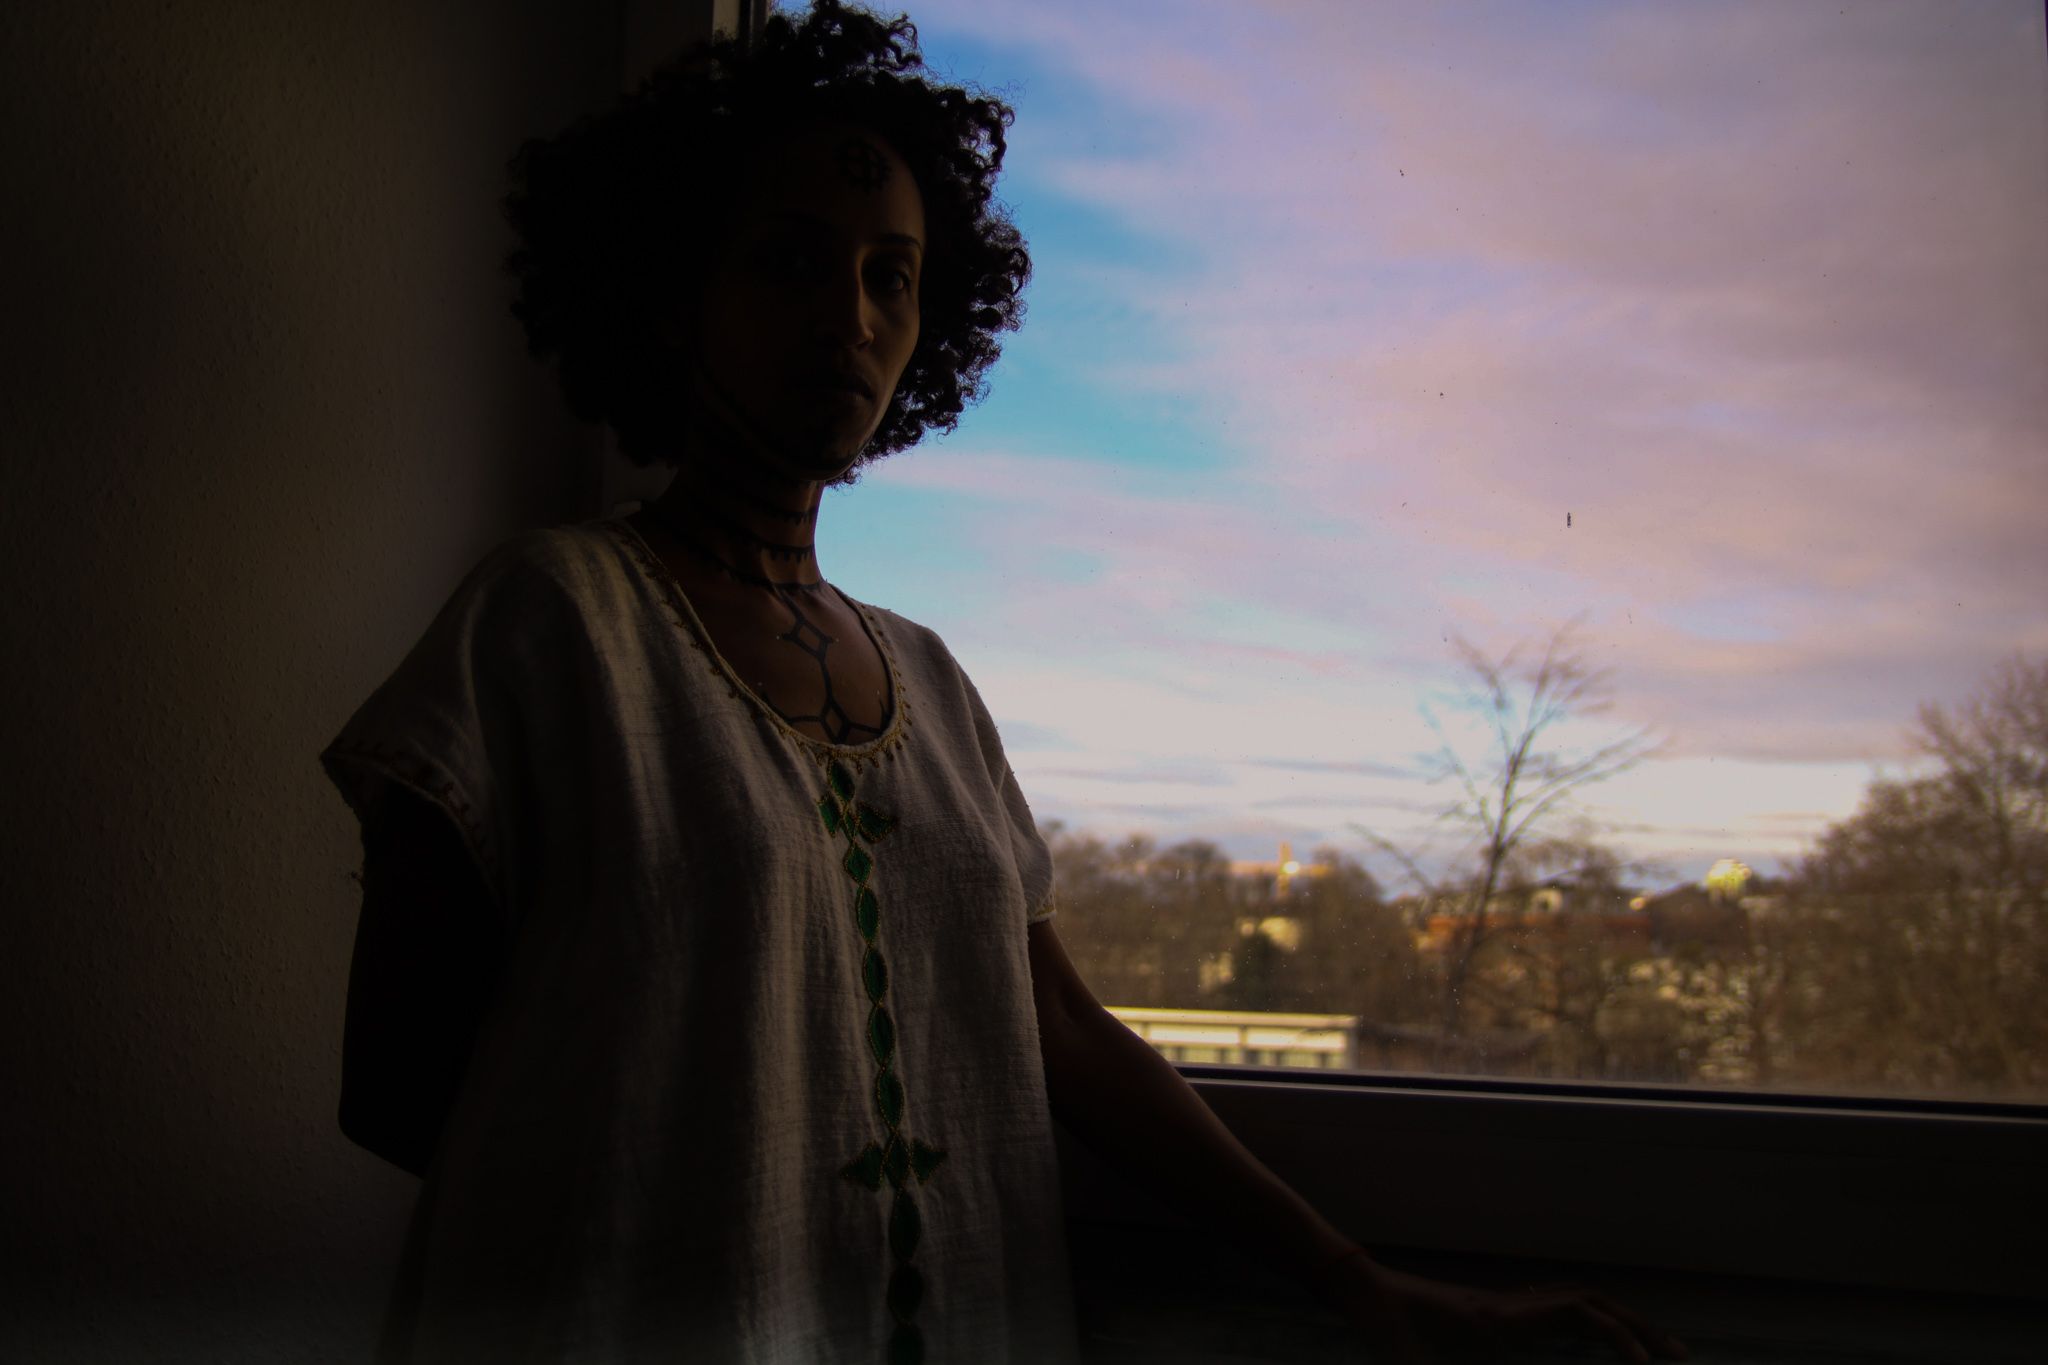 Eine Frau steht am Fenster. Der Abendhimmel ist blau-rosa. Frau ist schemenhaft von der Hüfte aufwärts zu sehen. Sie trägt ein Kleid mit horizontal verlaufenden Ornamenten. Ihr Oberkörper und Hals sind mit äthiopischen Tätowierungen bemalt.